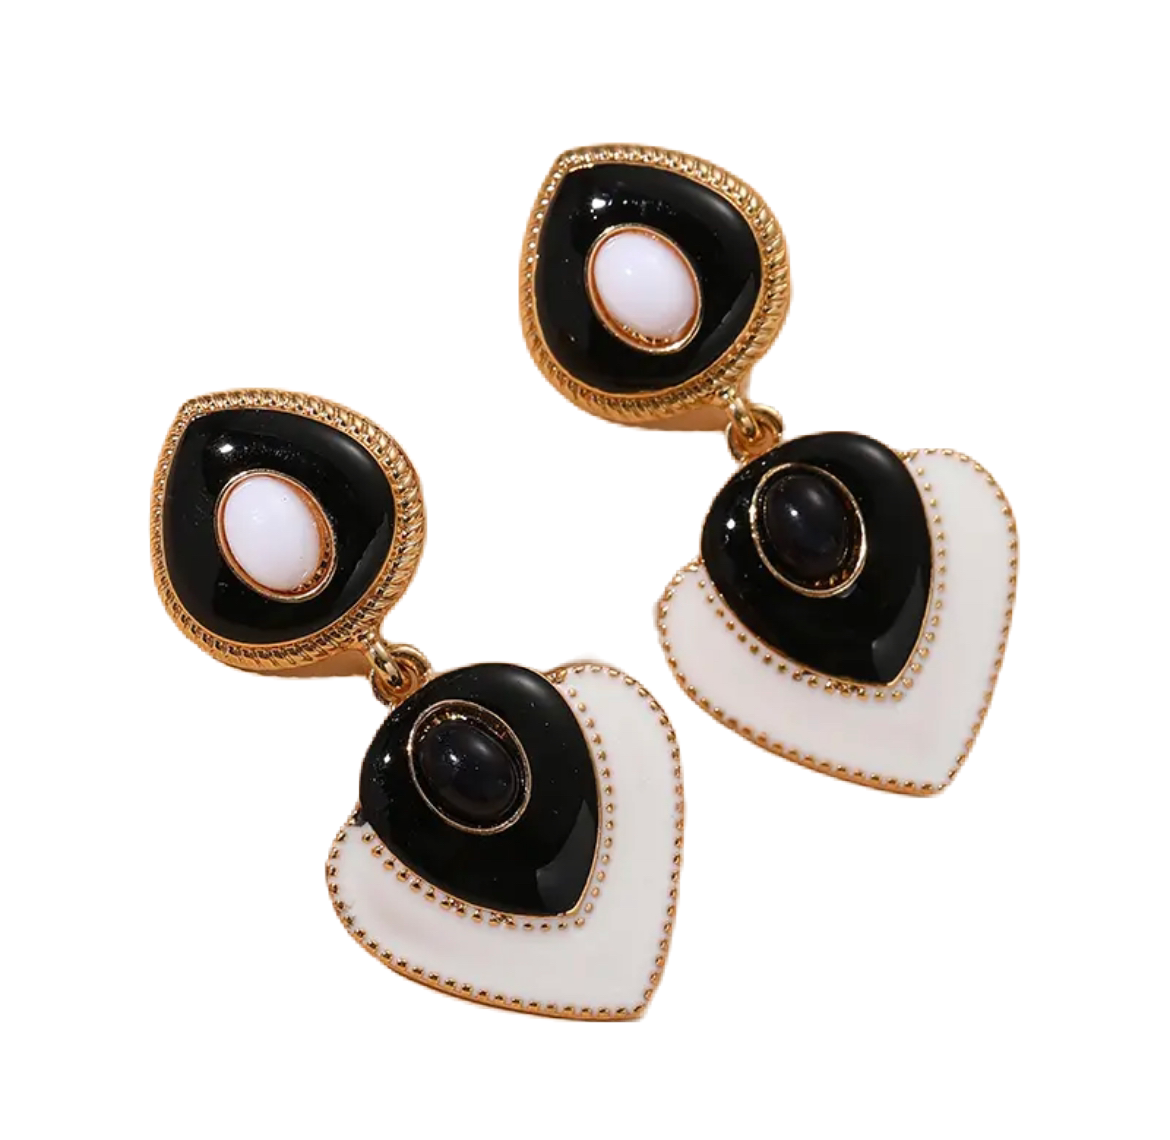 Black bohemian earrings